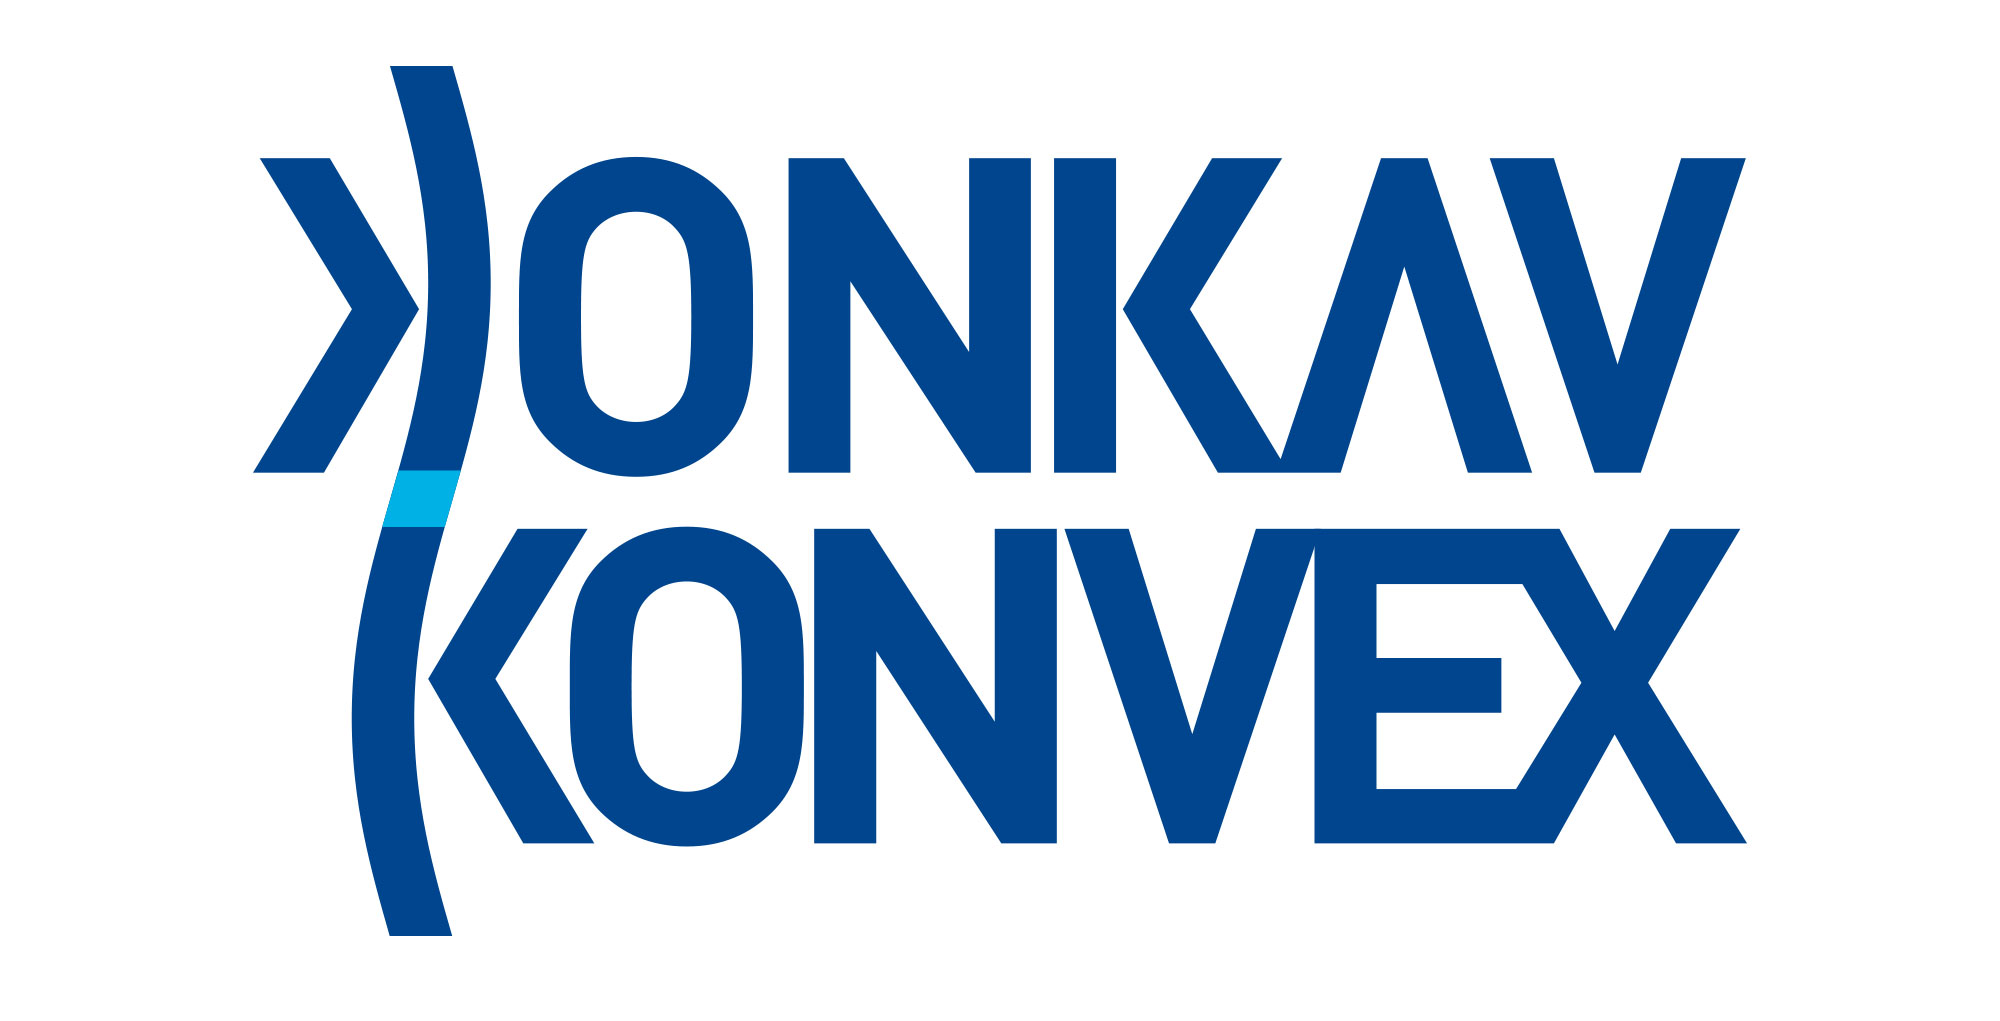 konkav konvex logo 1